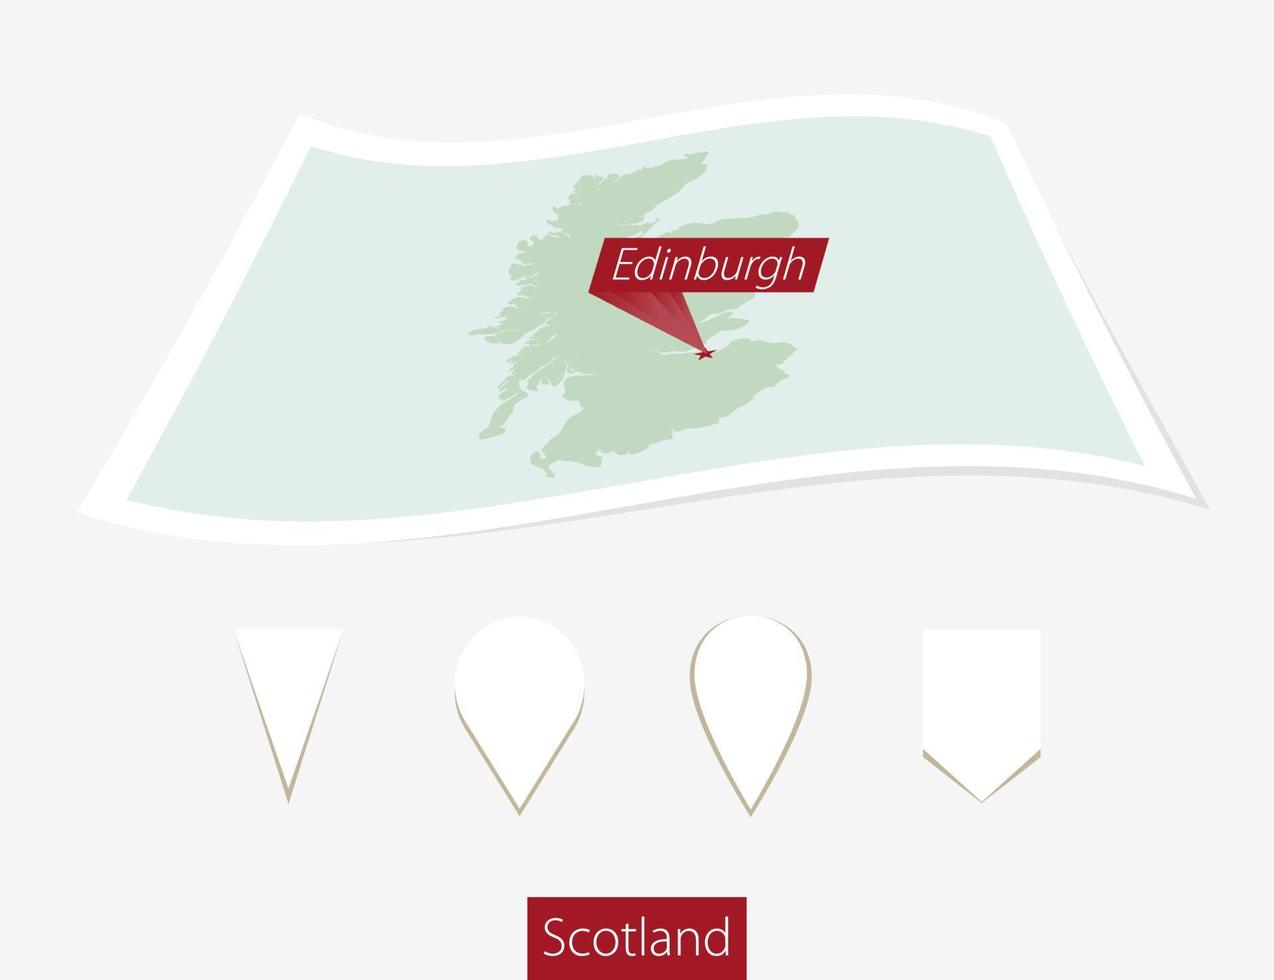 gebogen Papier Karte von Schottland mit Hauptstadt Edinburgh auf grau Hintergrund. vier anders Karte Stift Satz. vektor